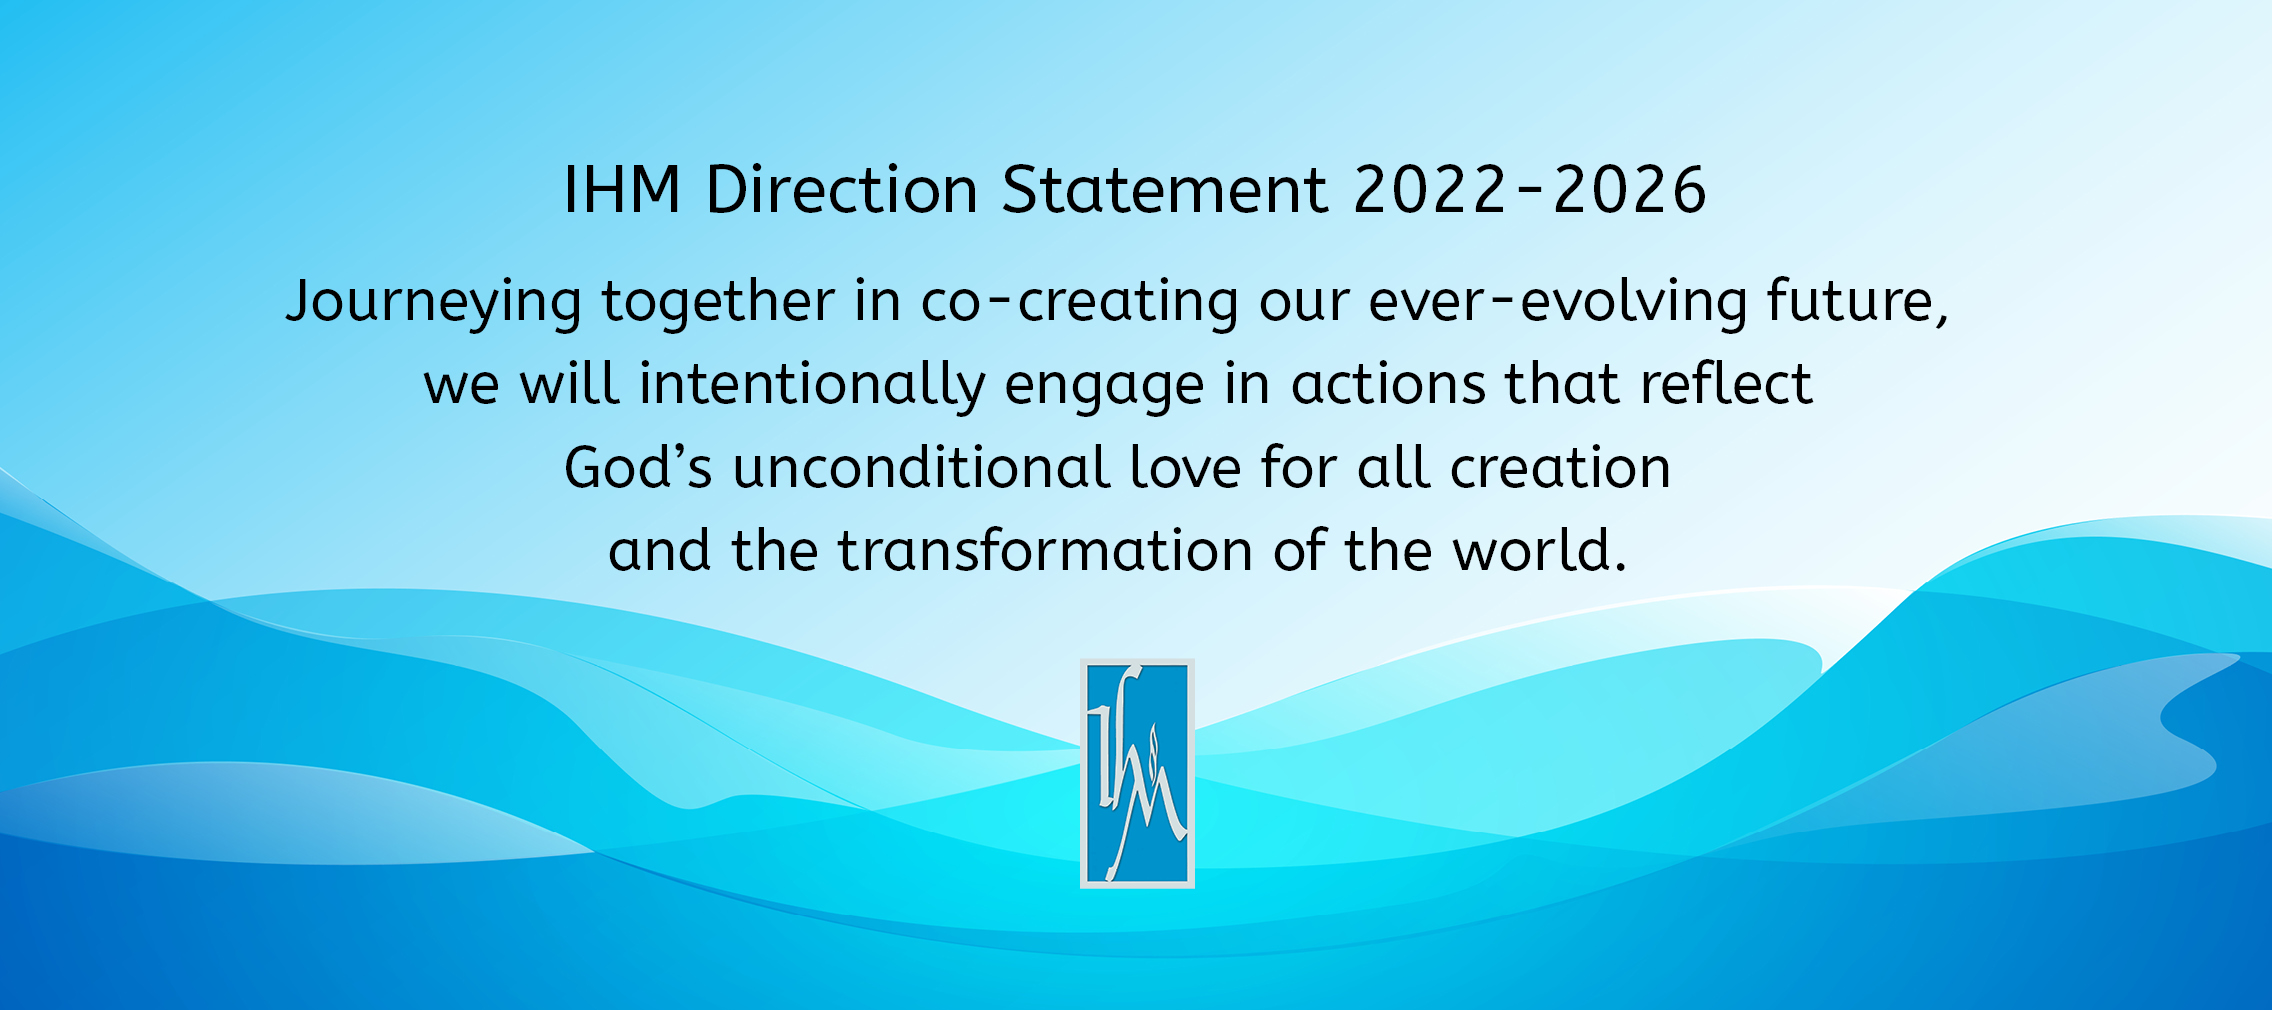 IHM Direction Statement 2022-2026